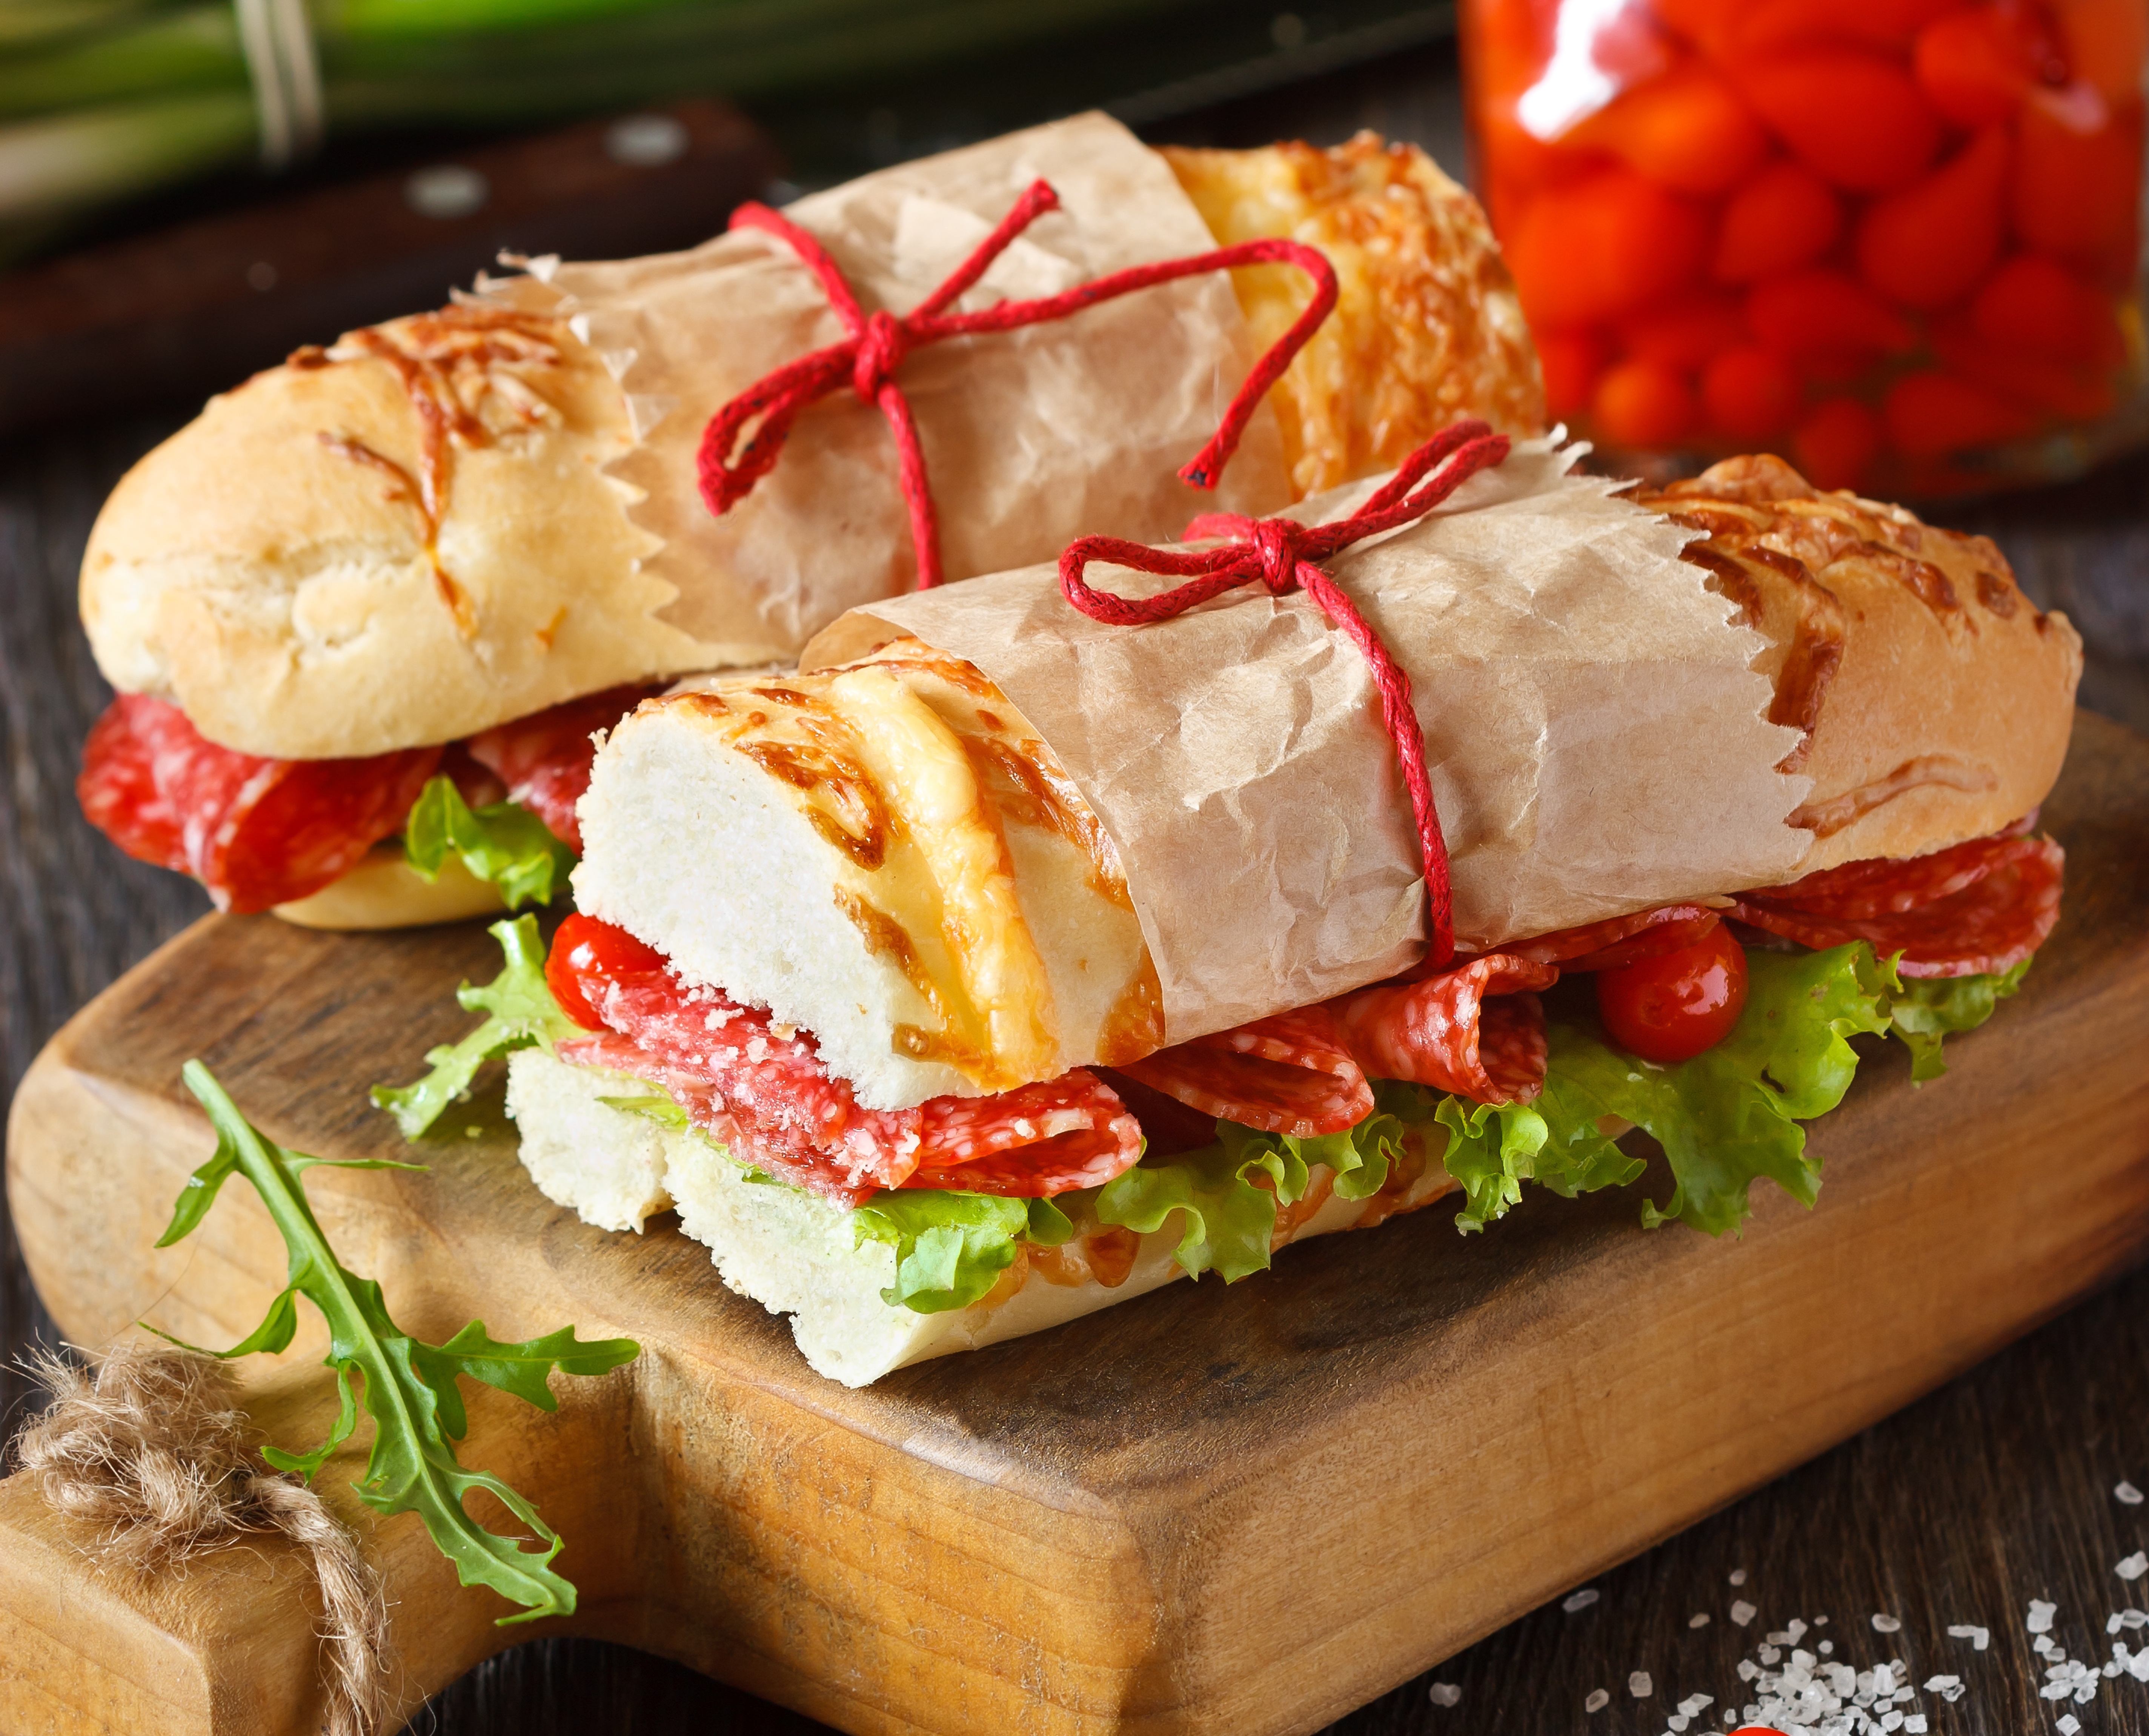 Free download wallpaper Food, Bread, Sandwich on your PC desktop